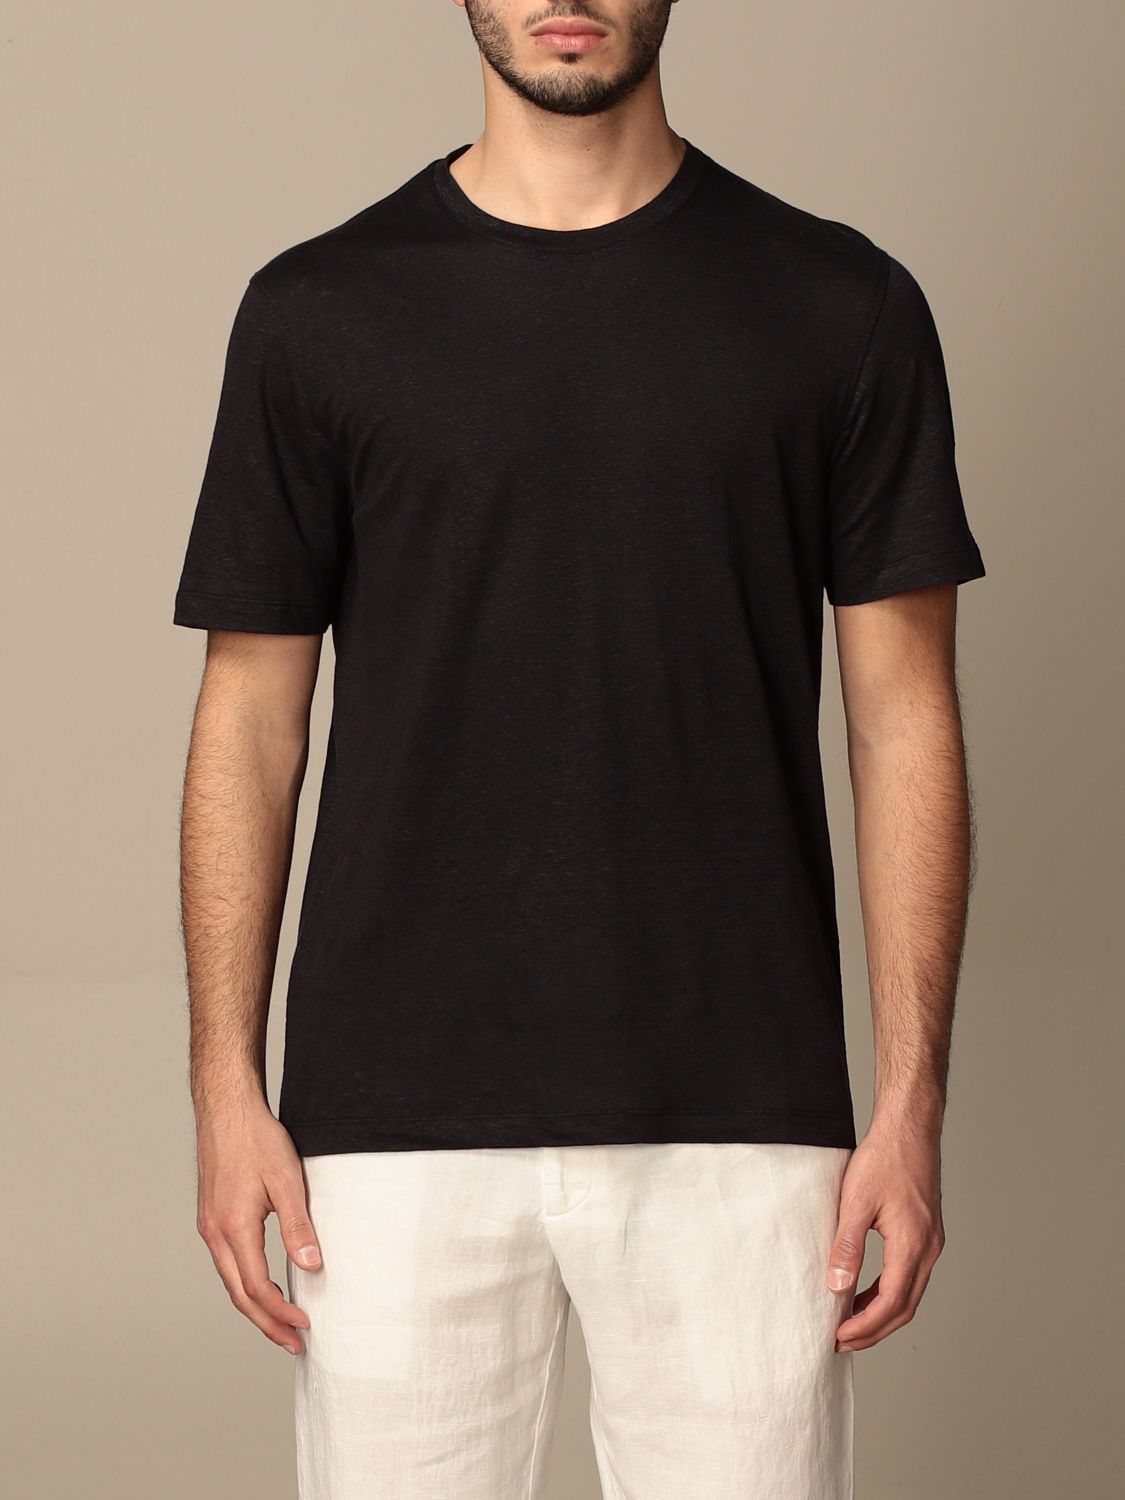 Zegna Outlet: Ermenegildo T-shirt in pure linen - Navy | Zegna t-shirt ...